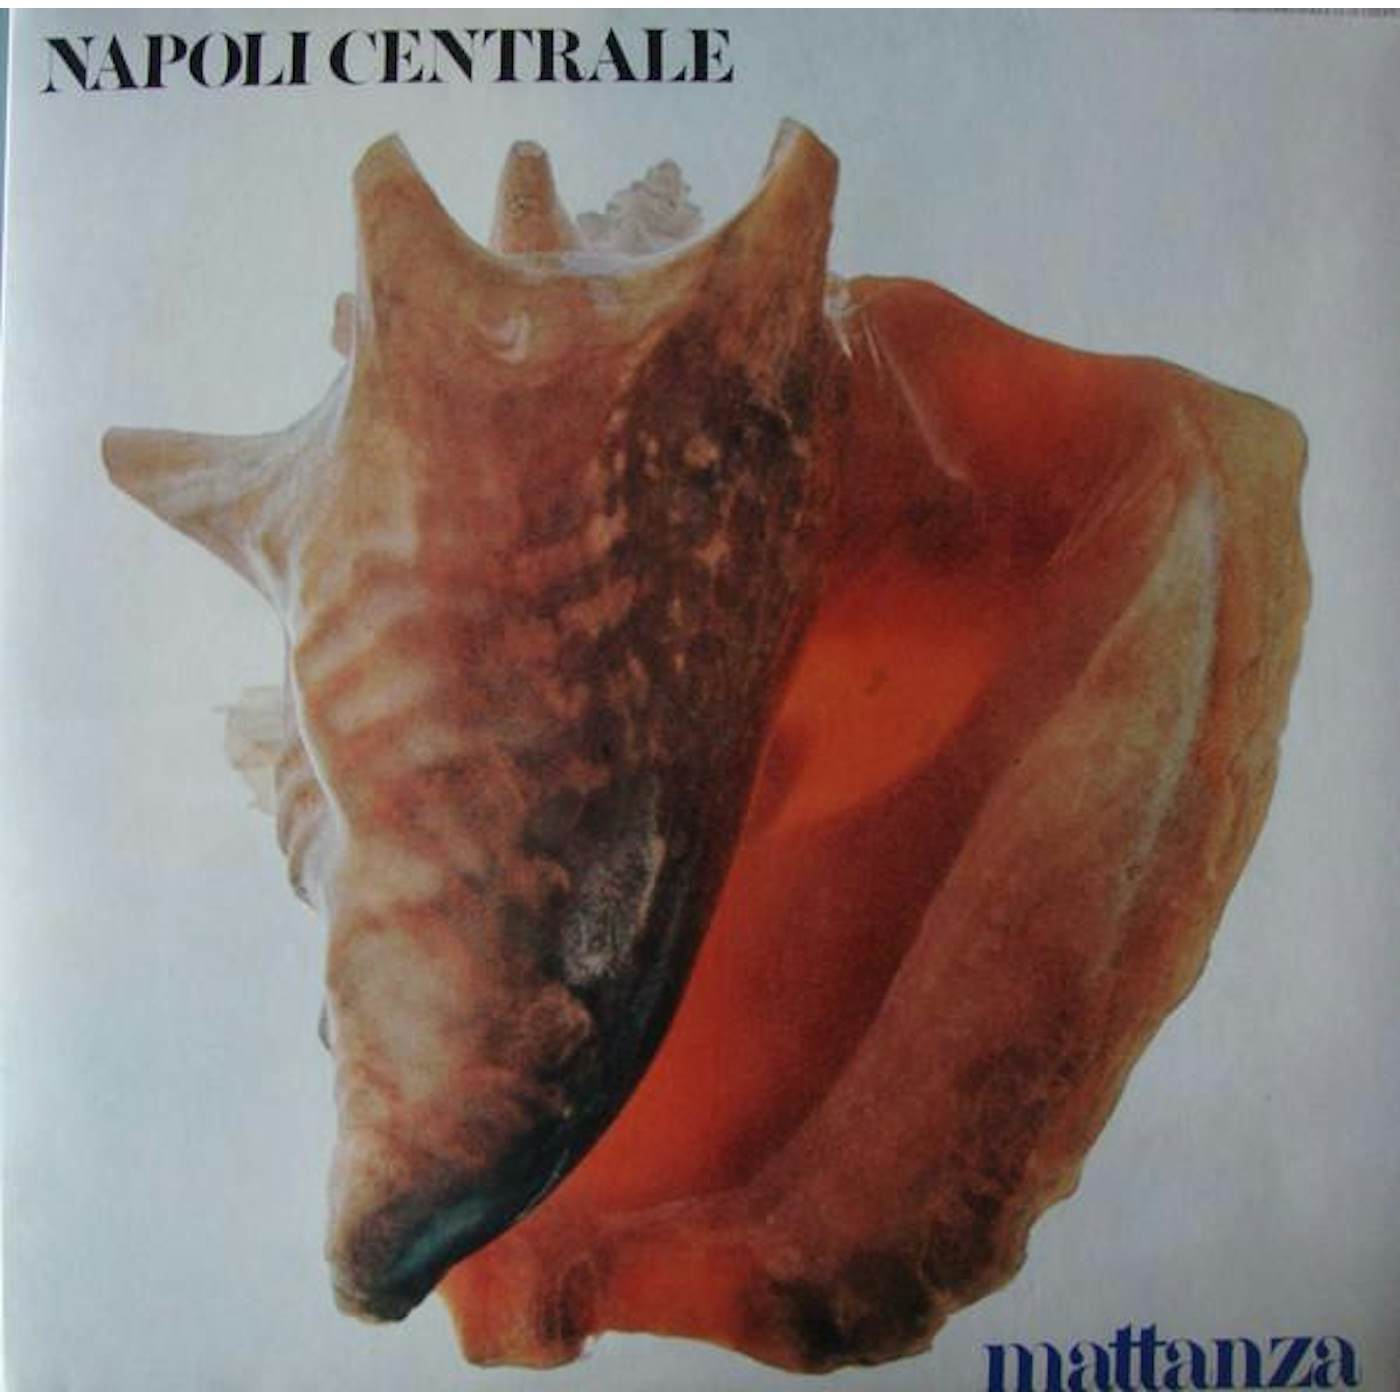 Napoli Centrale Vinyl Record